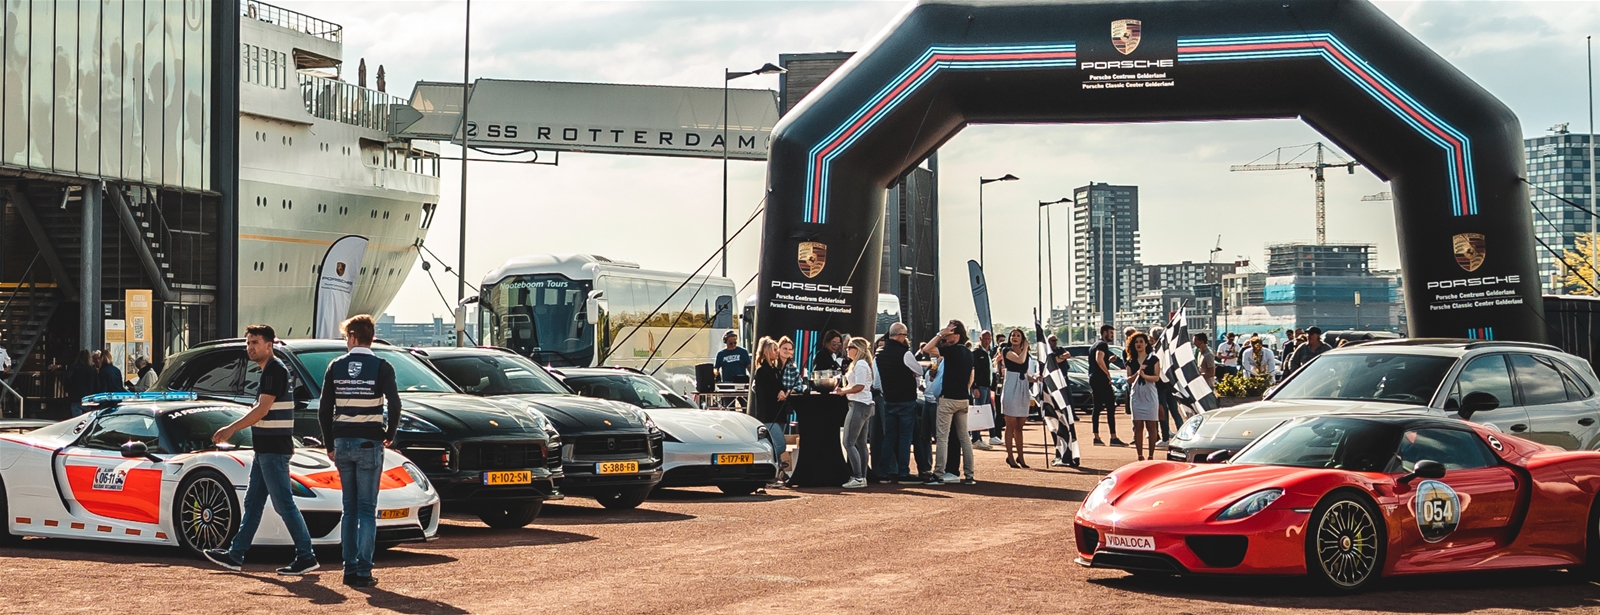 Porsche Centrum Gelderland Rally